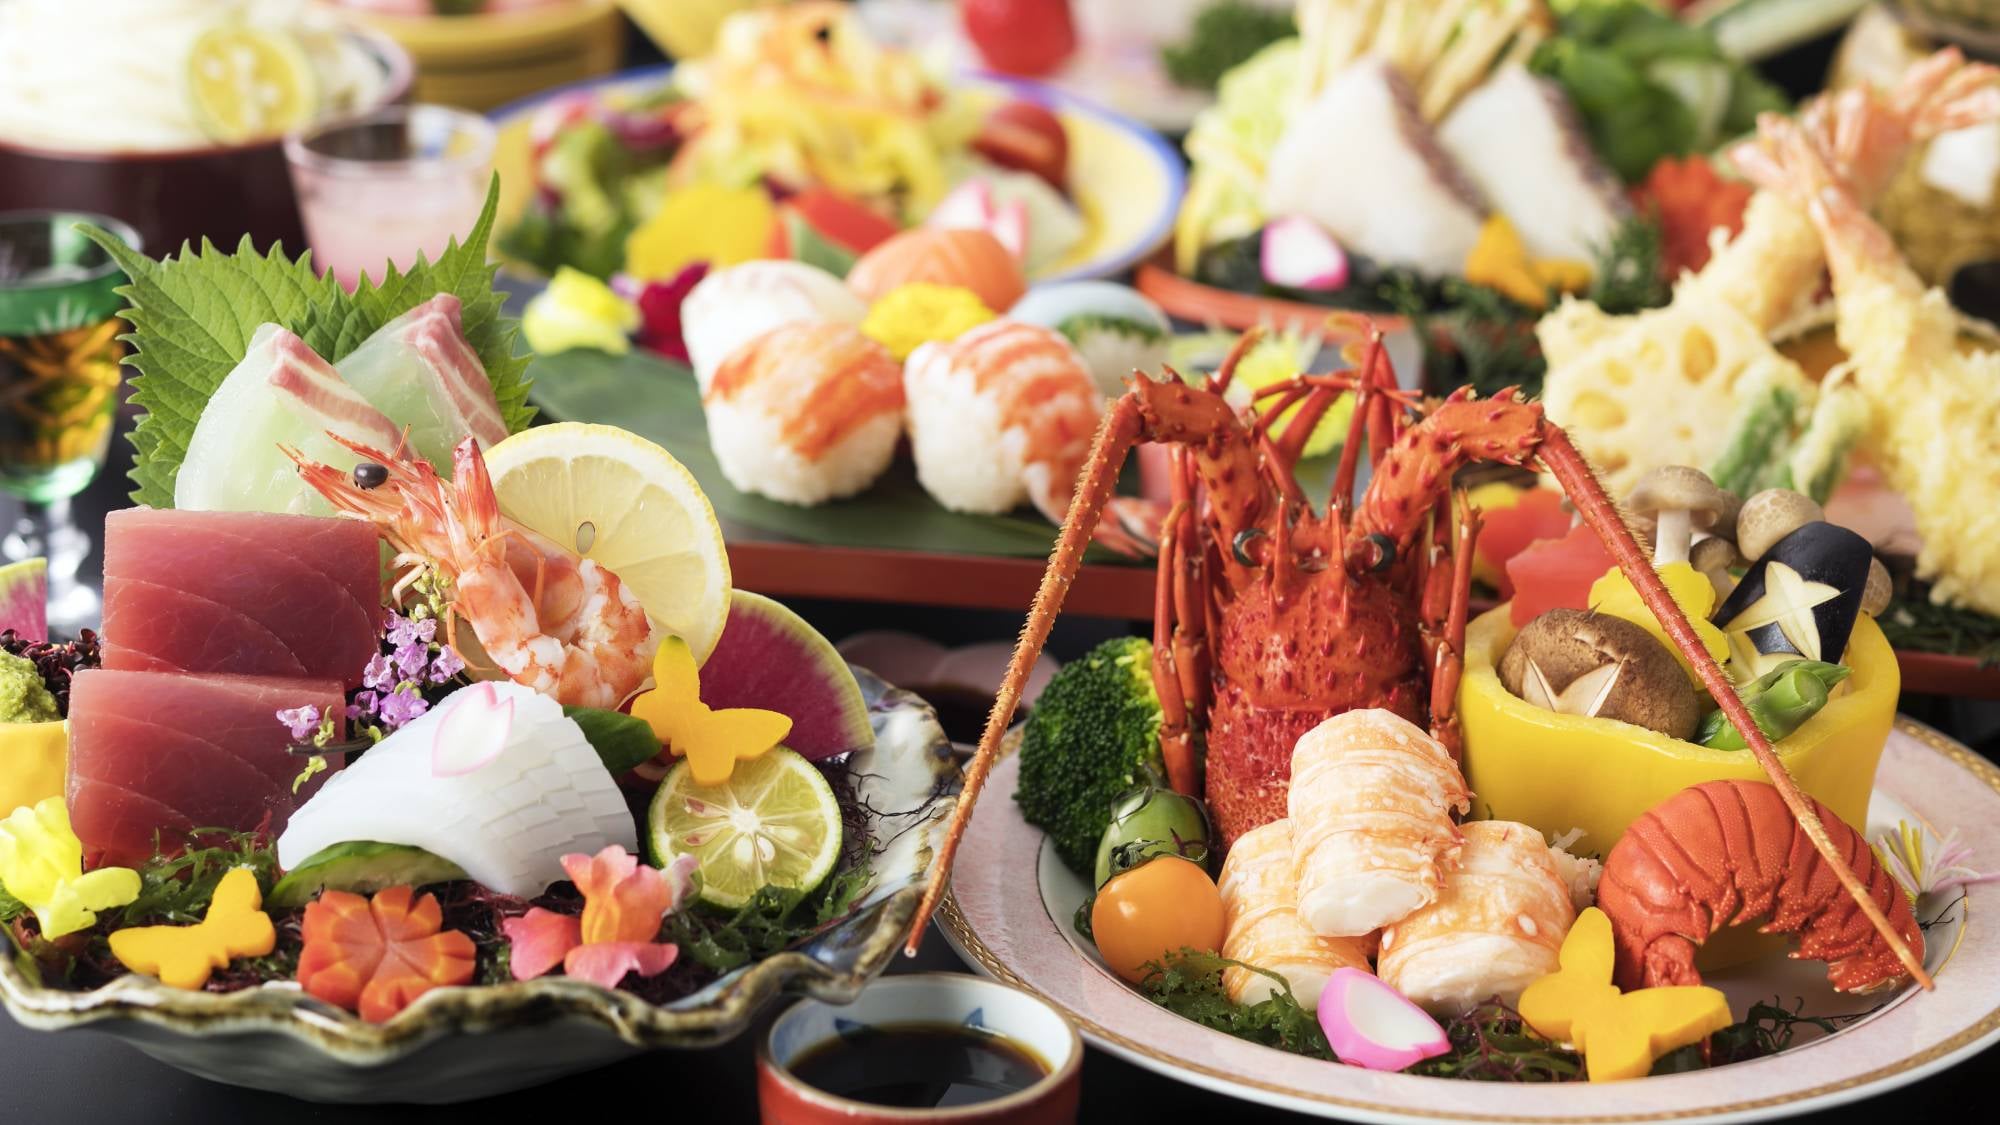 [Restoran Kiri Kaiseki Khusus] "Daging sapi pinggang atau lobster" Terutama bahan favorit Anda